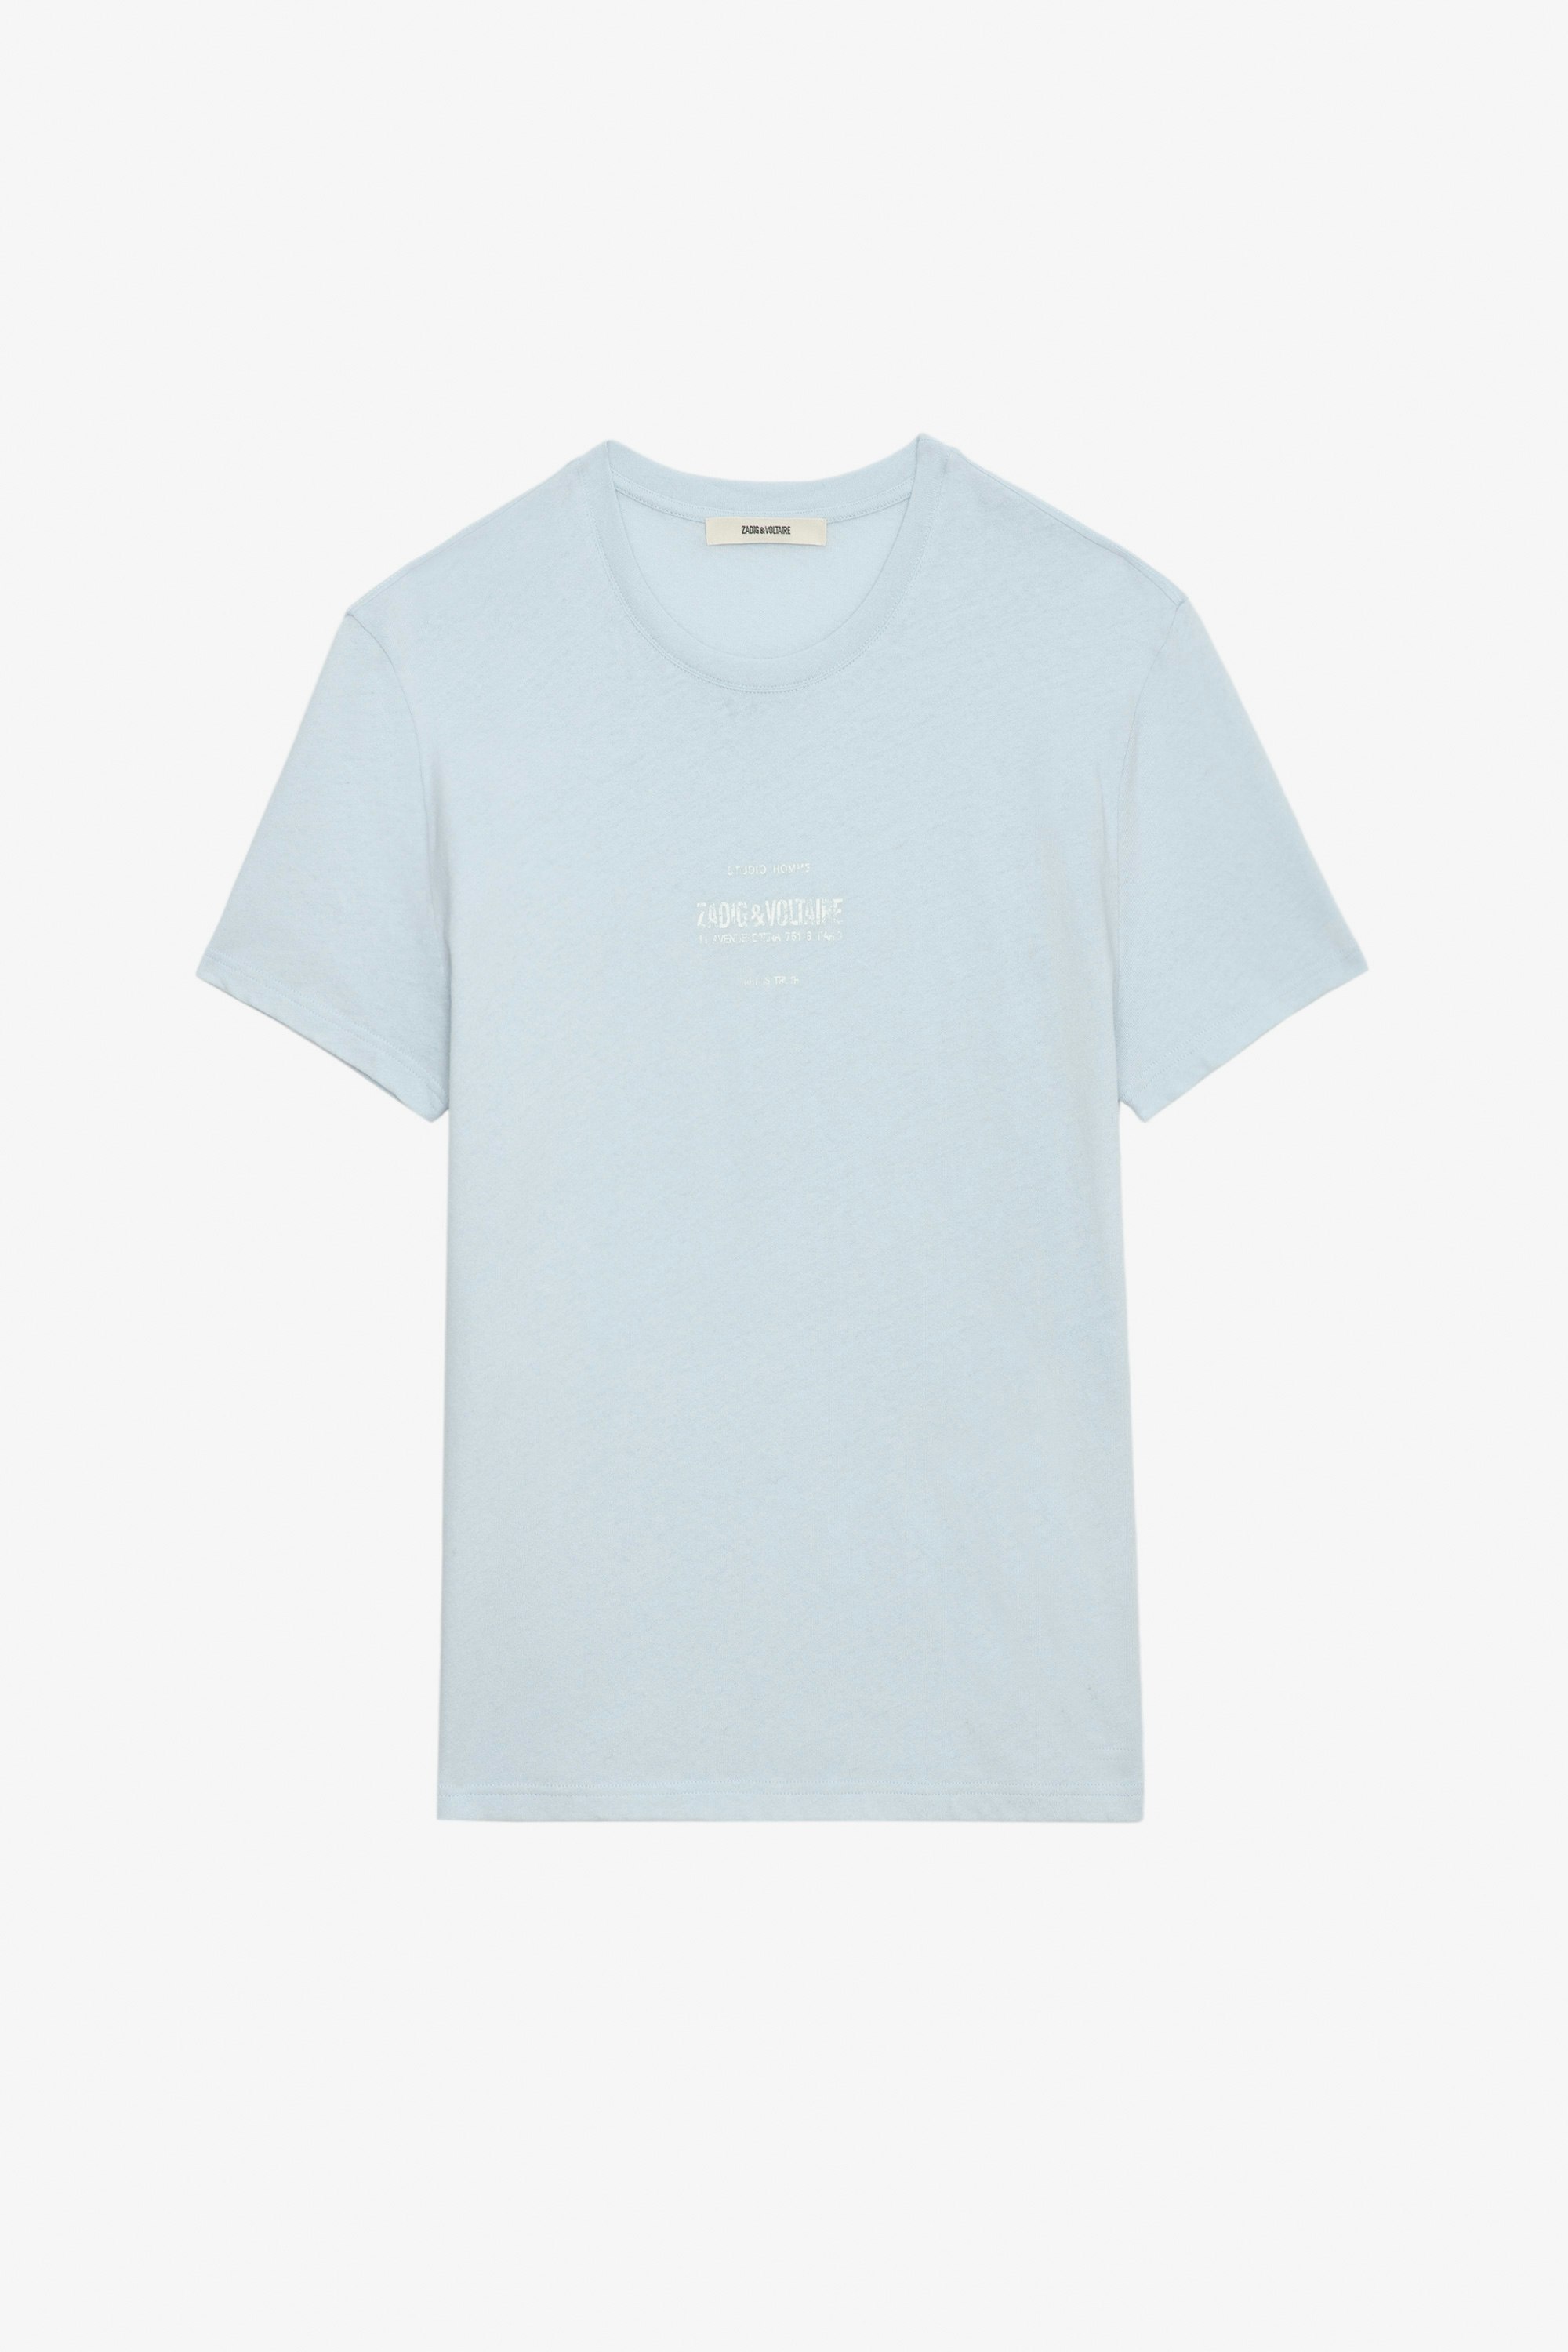 Camiseta Jetty - Camiseta de lino lavado en color azul cielo con mangas cortas y escudo Studio Homme estampado.